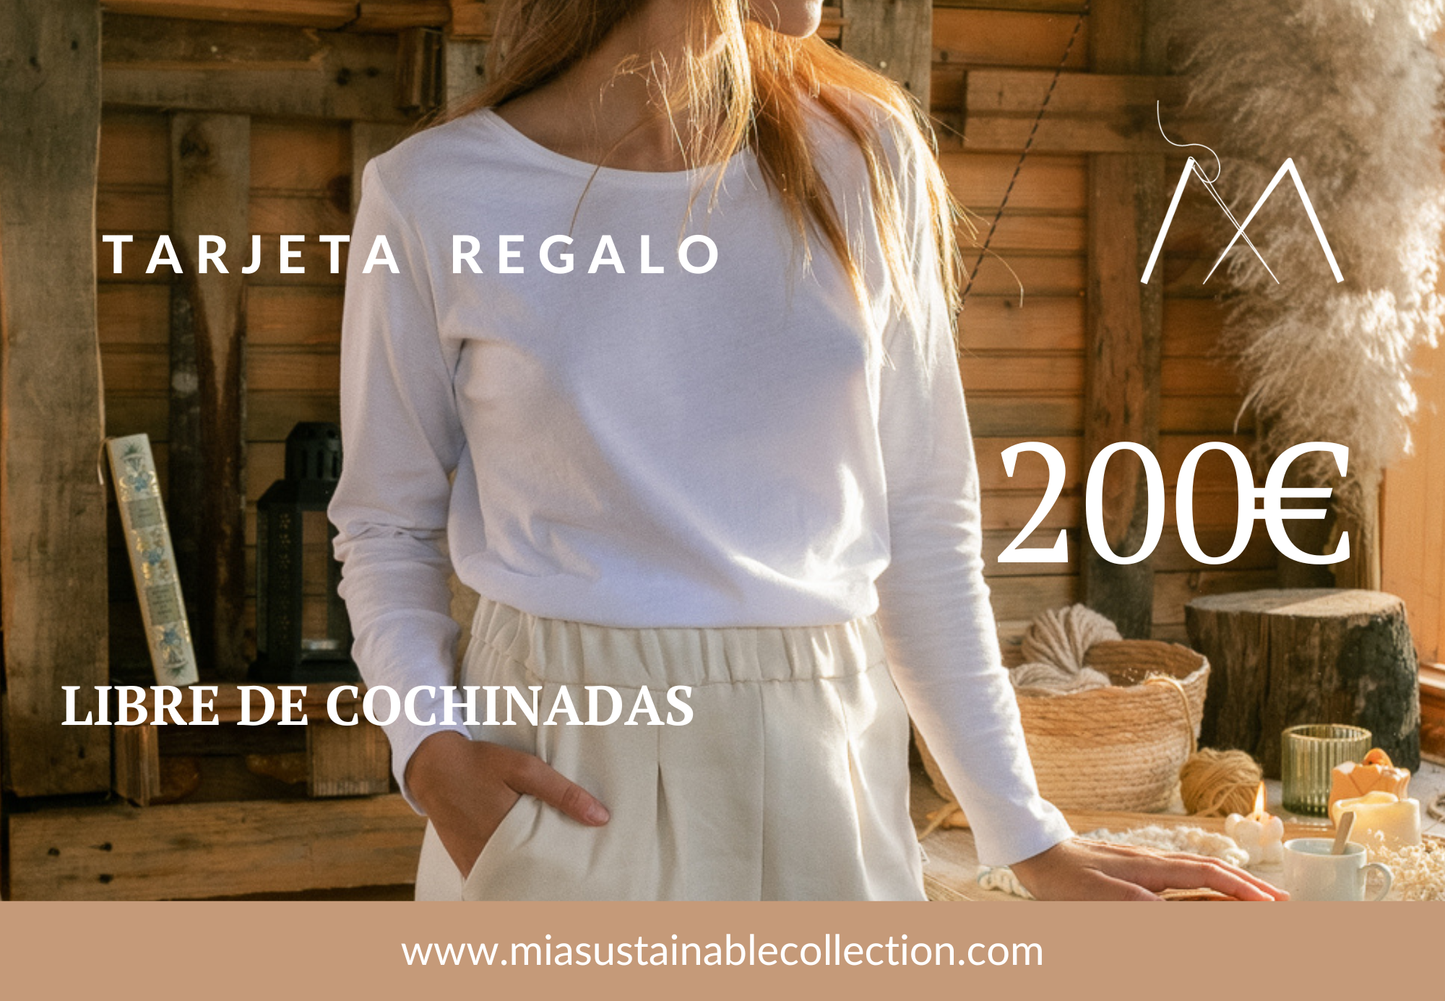 MIA Sustainable Collection Tarjeta de regalo 200 / On-line Tarjeta Regalo